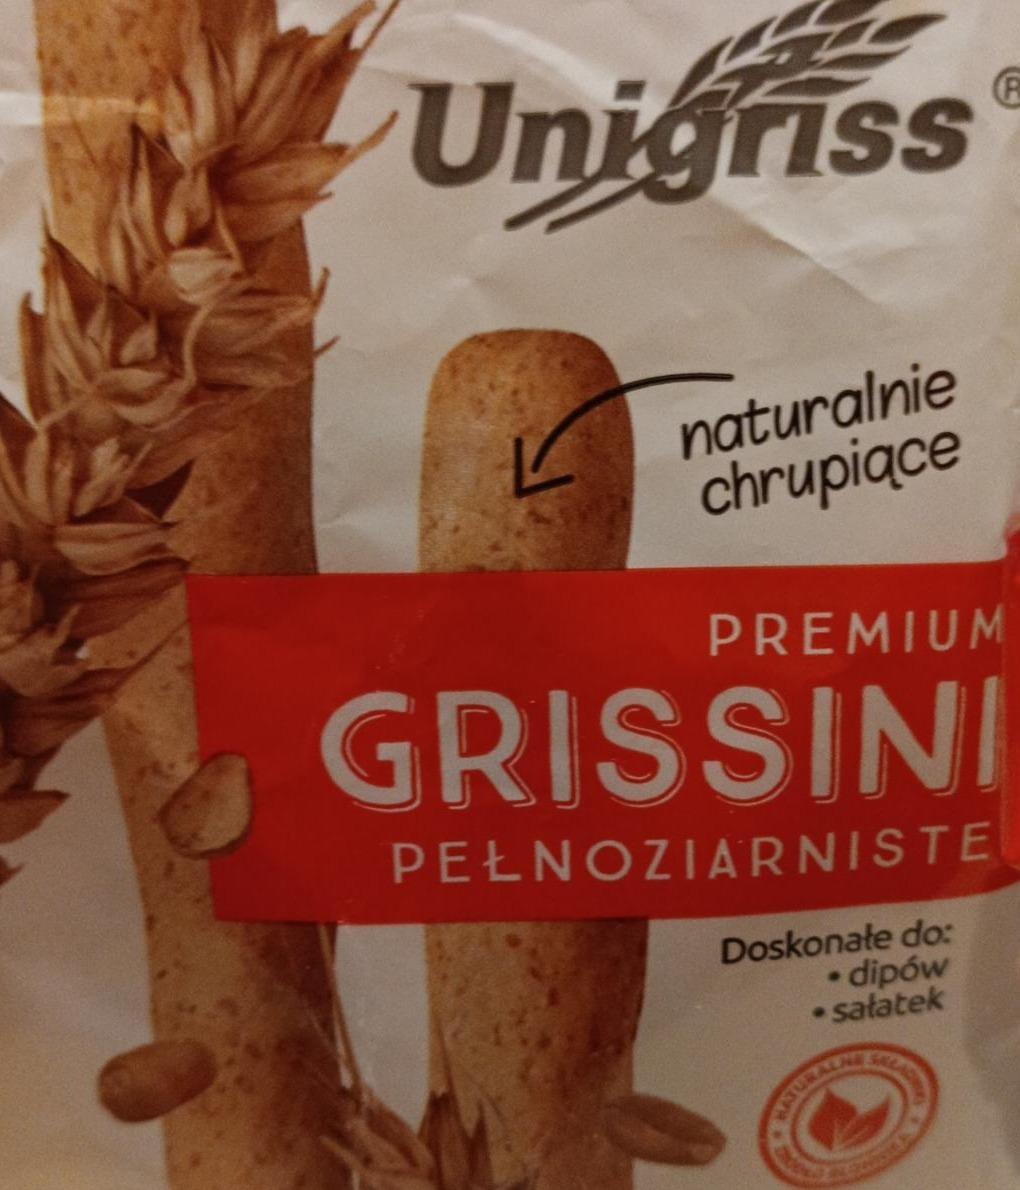 Zdjęcia - premium grissini pełnoziarniste Unigriss